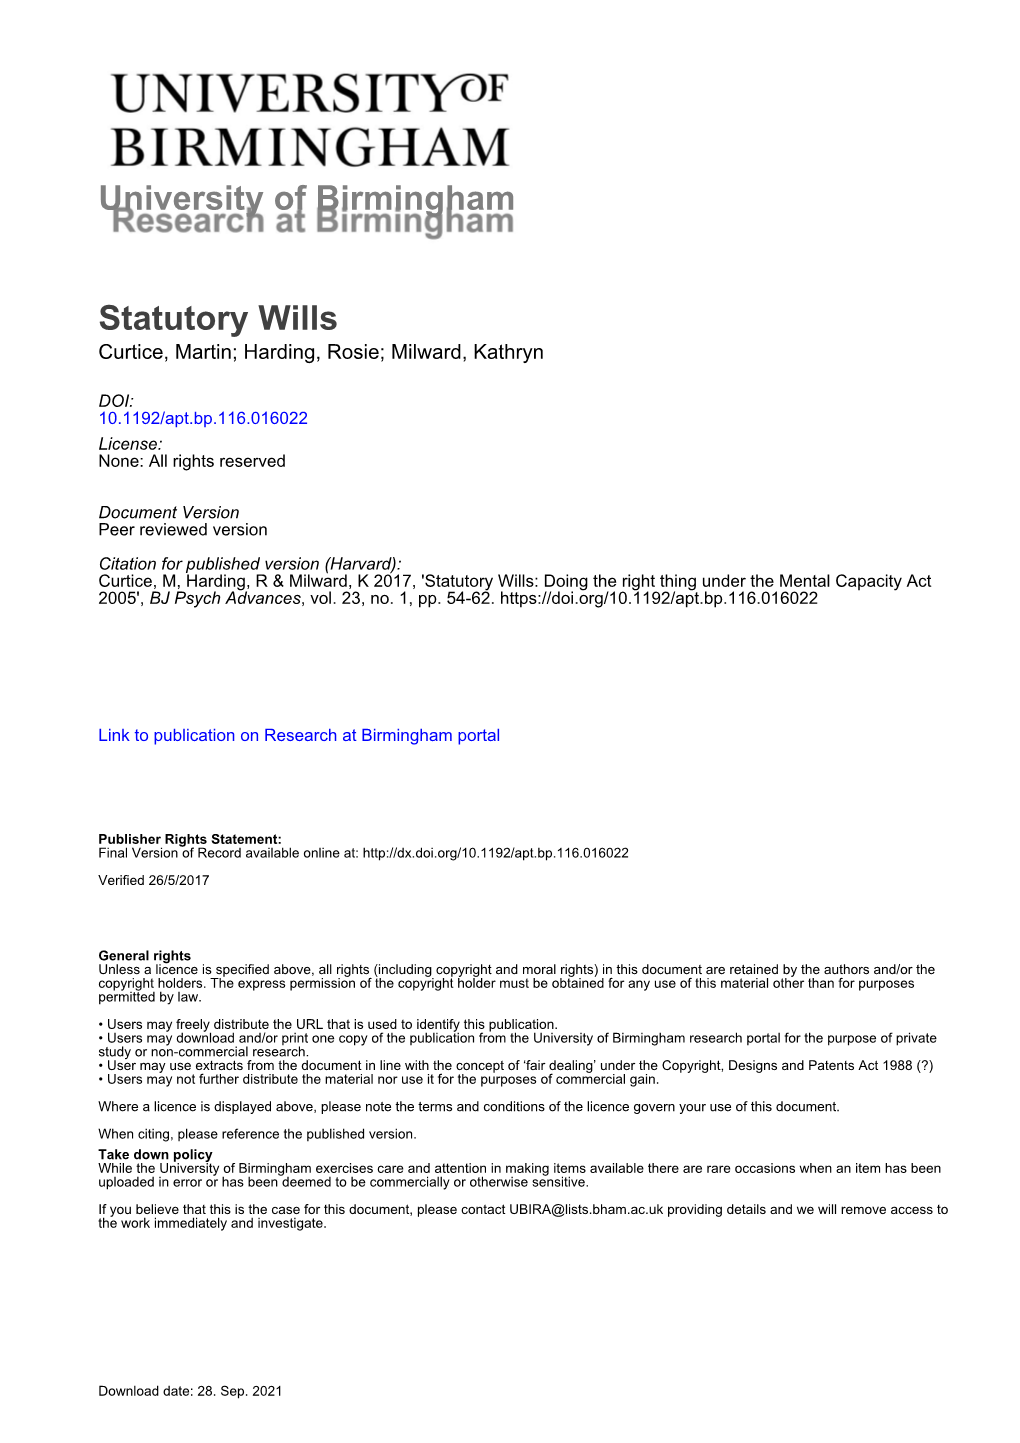 University of Birmingham Statutory Wills